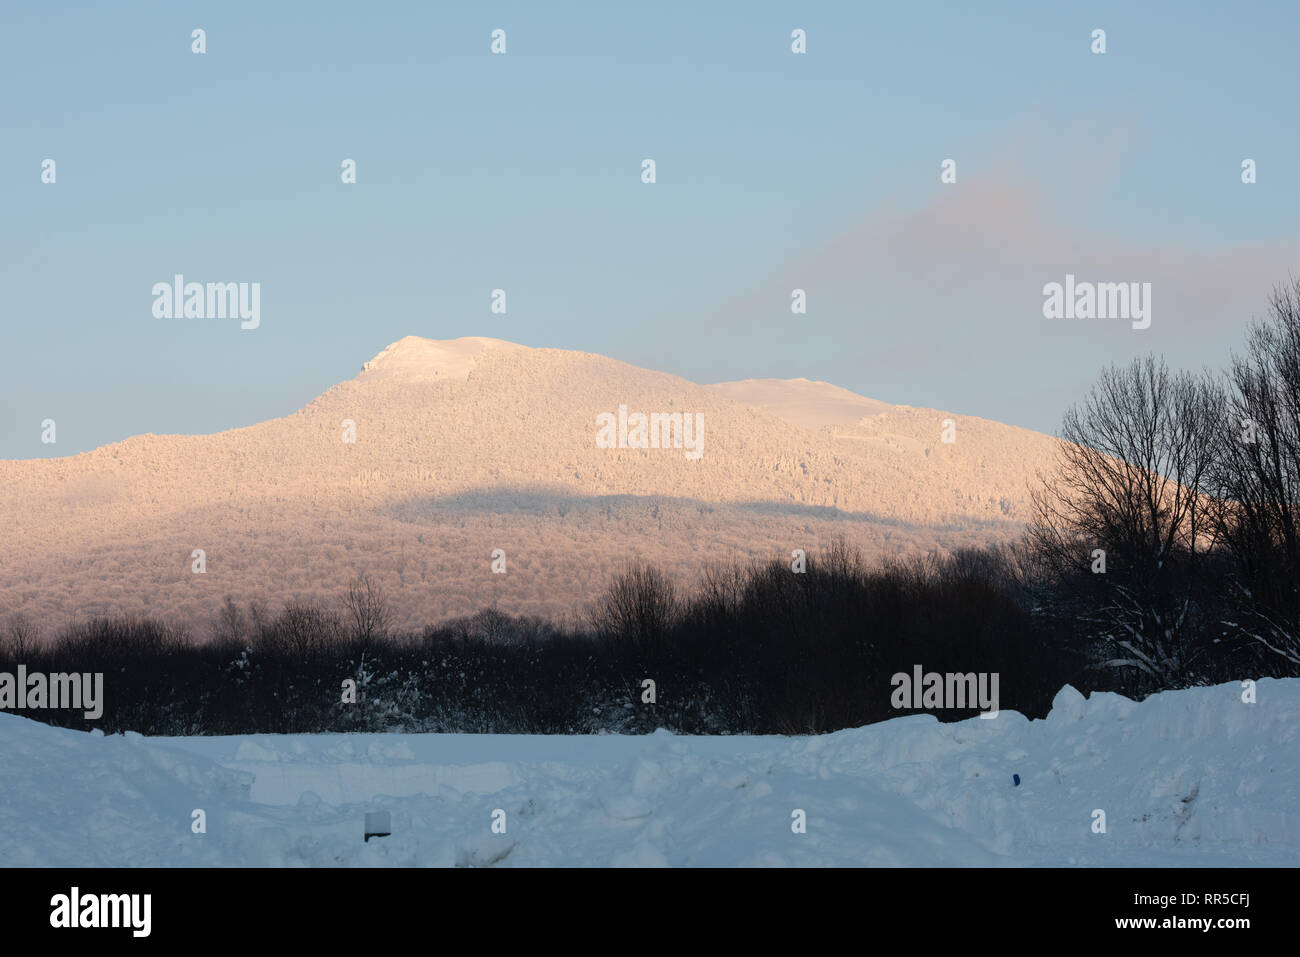 Las Montañas Bieszczady. Vistas Hnatowe Berdo pico de gama Wetlińska Połonina. En invierno el paisaje nevado. Picos nevados. Foto de stock